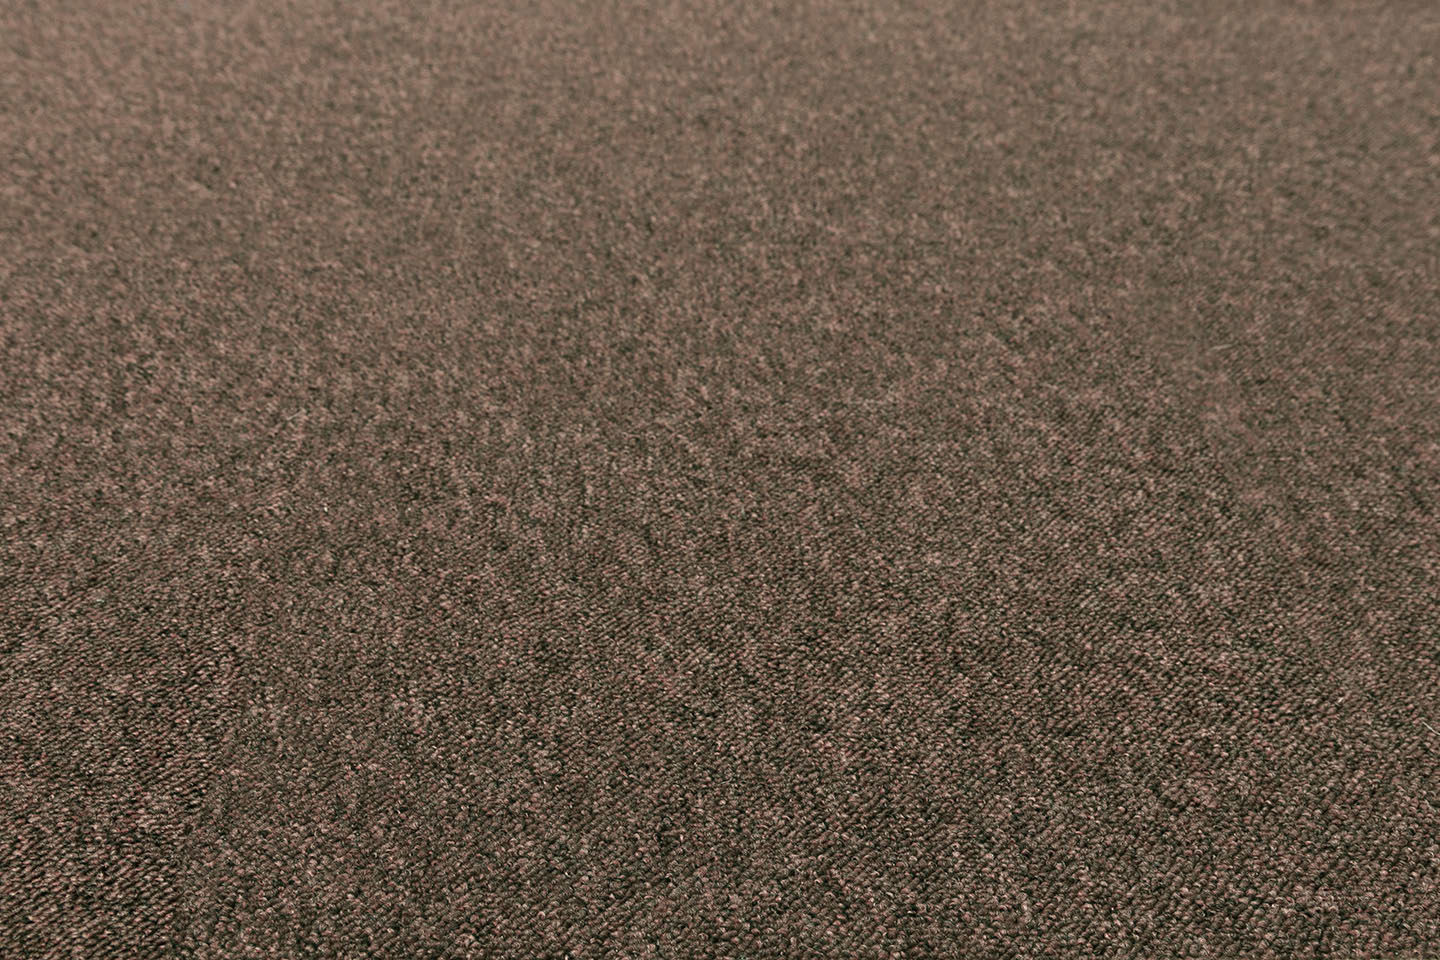 Metrážny koberec VOLUNTEER hnedý